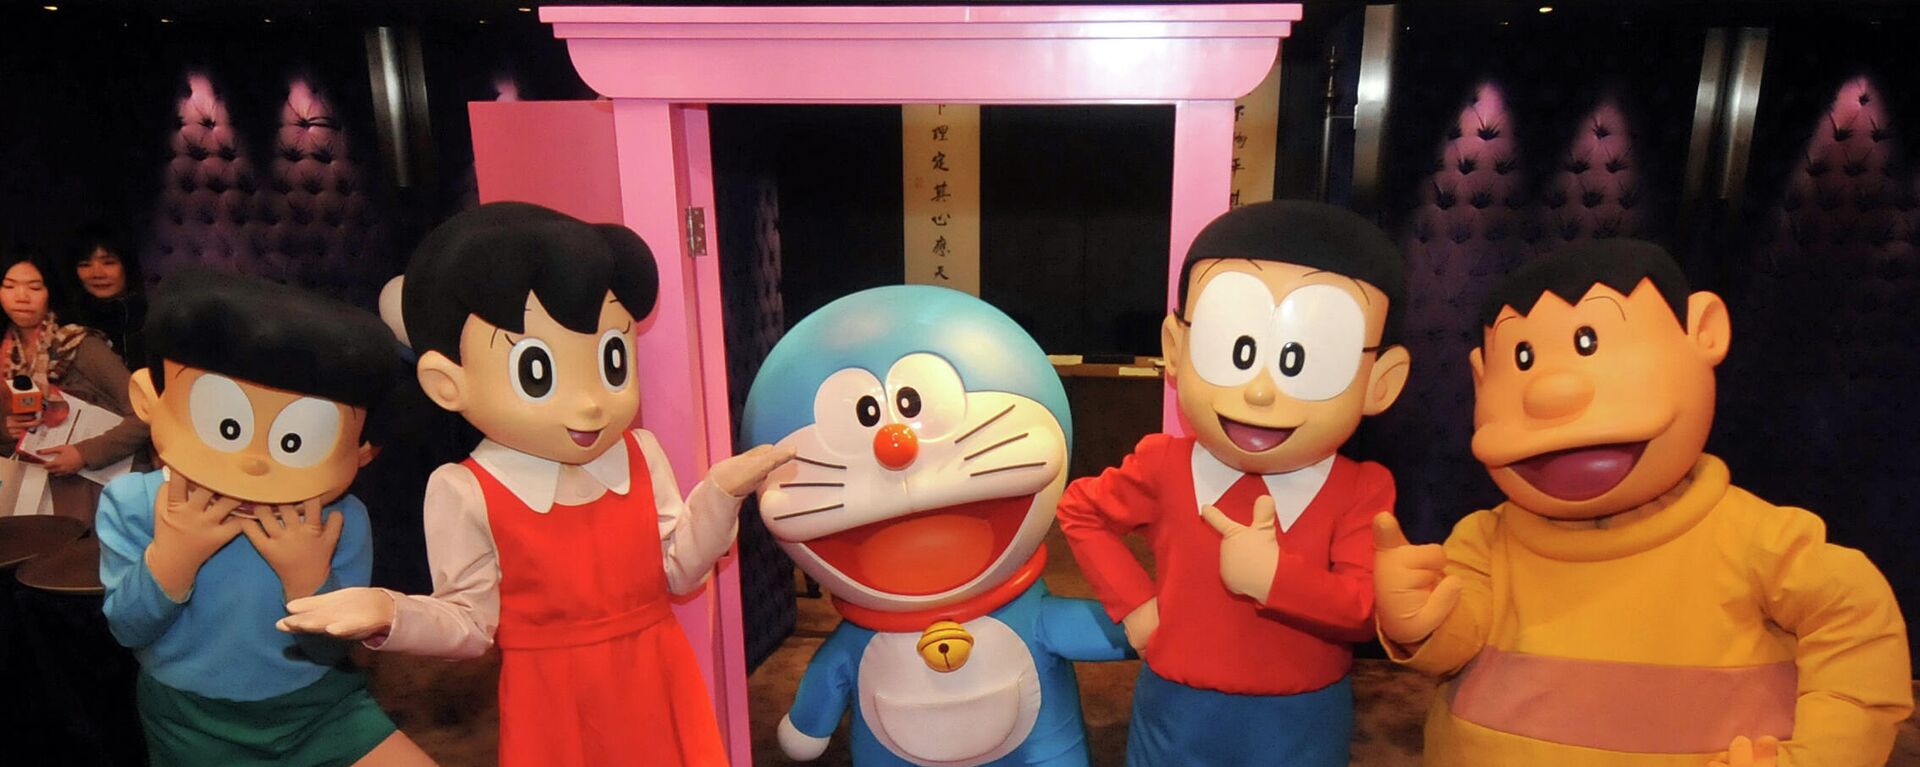 Unos personajes del dibujo animado Doraemon - Sputnik Mundo, 1920, 14.07.2021